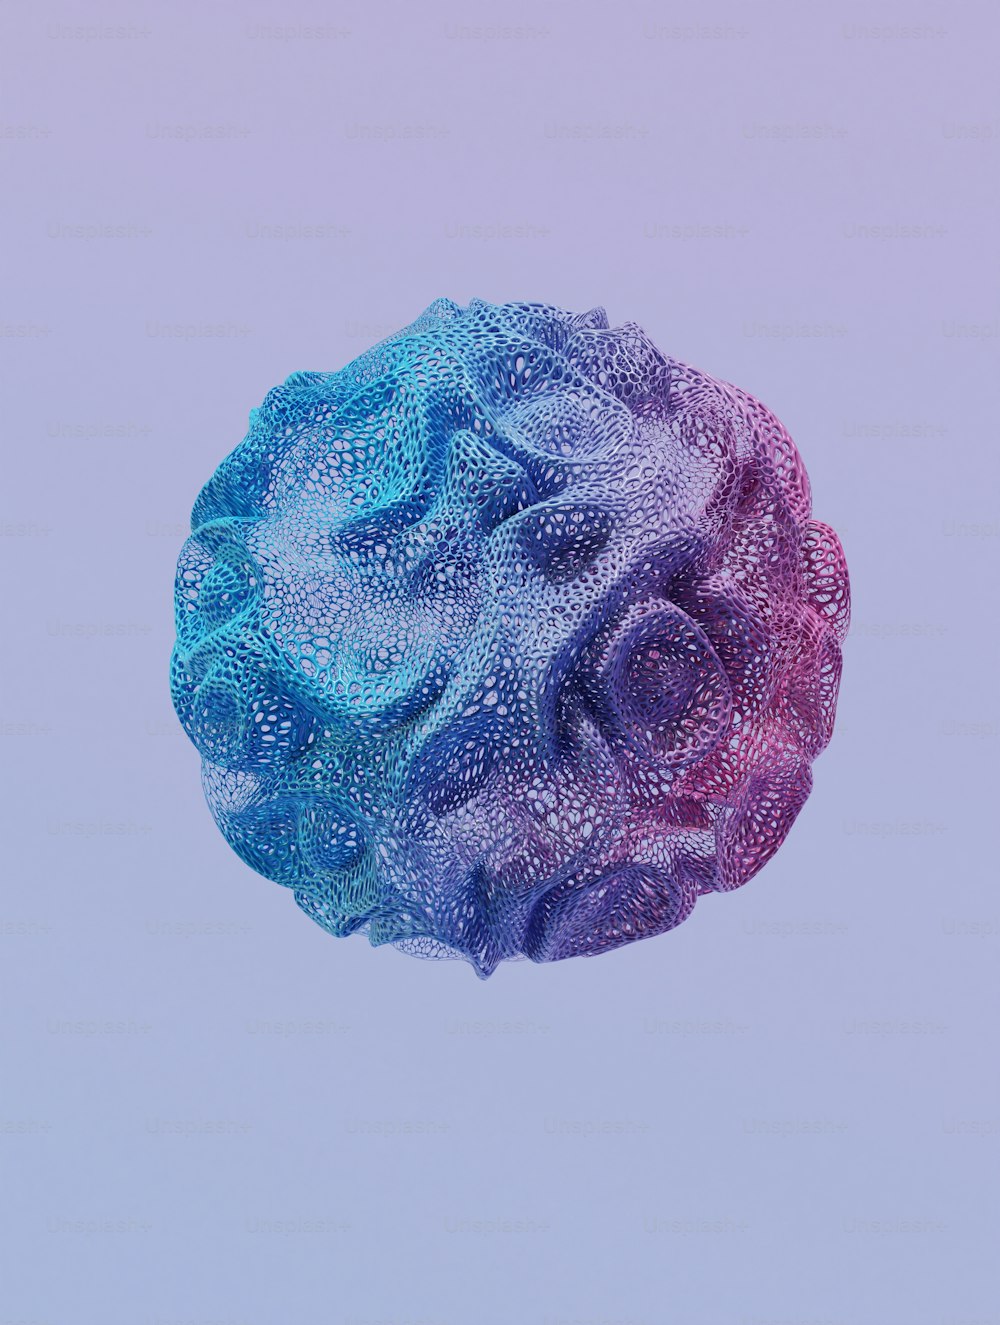 Una bola multicolor de pompas de jabón flotando en el aire